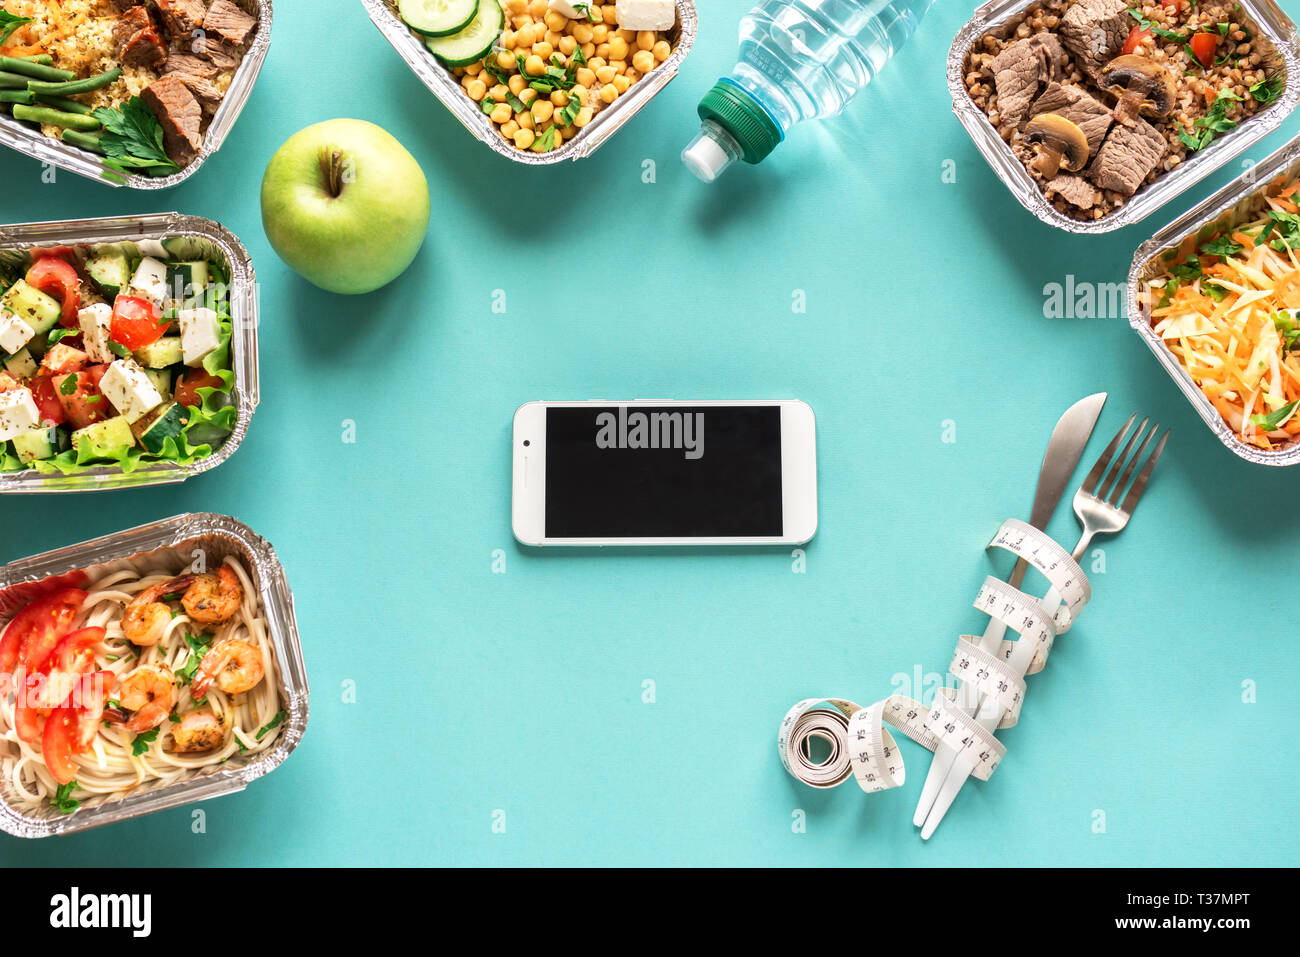 Speisen im Smartphone mit gesunden Lebensmitteln. Fitness Ernährung für Ernährung. Täglichen Mahlzeiten in Kartons auf Blau, top anzeigen, kopieren. Stockfoto